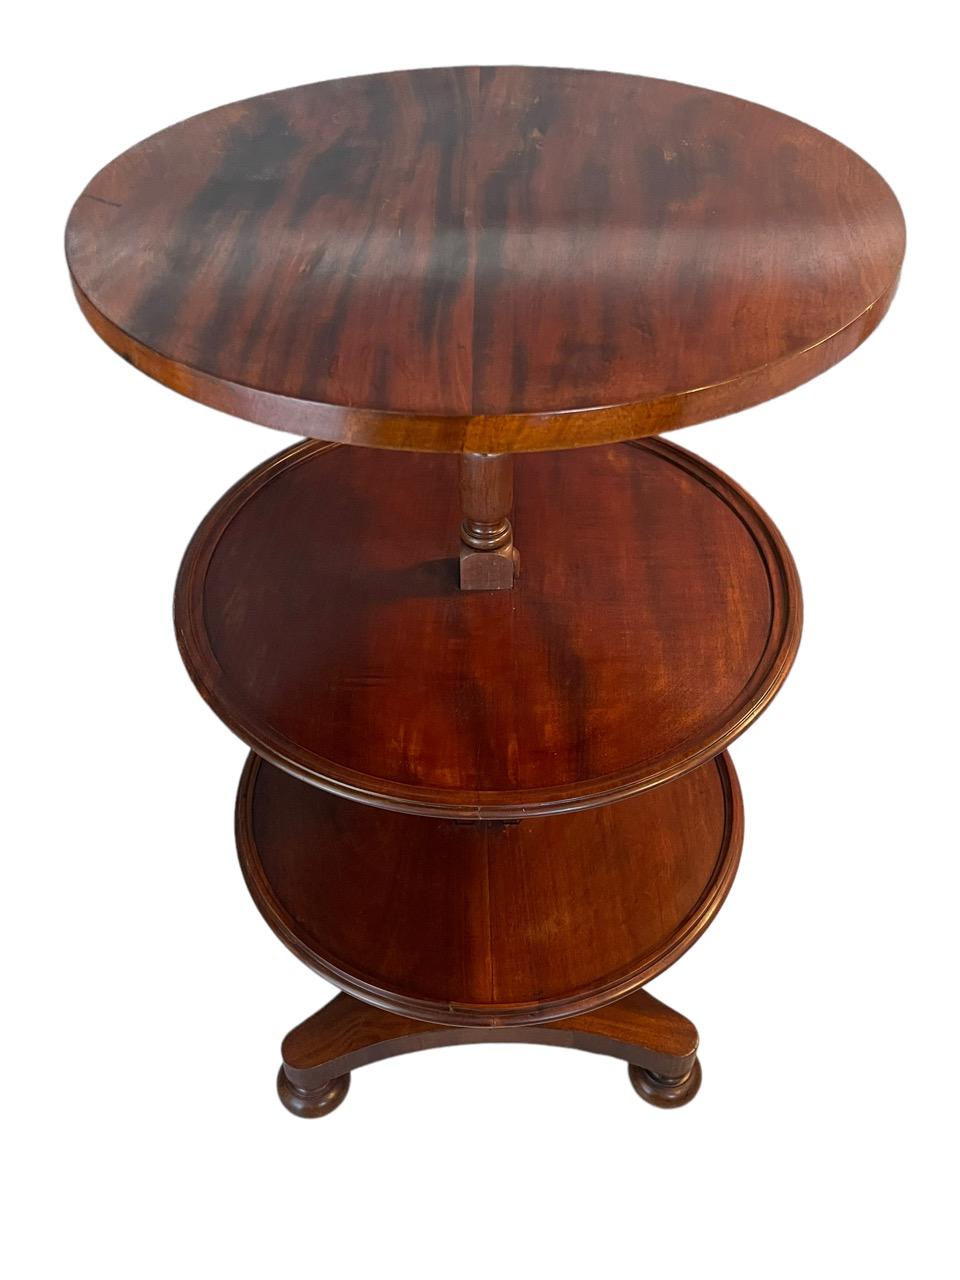 englischer Mahagoni-Tisch aus dem 18. Jahrhundert, erweiterbar, rund, dreistufig, mit Speiseaufzug. Der elegant gedrehte Stiel trägt drei gleich große Schalen. Die Tabelle reduziert und erweitert die Anzahl der Ebenen auf eine oder drei. Er steht